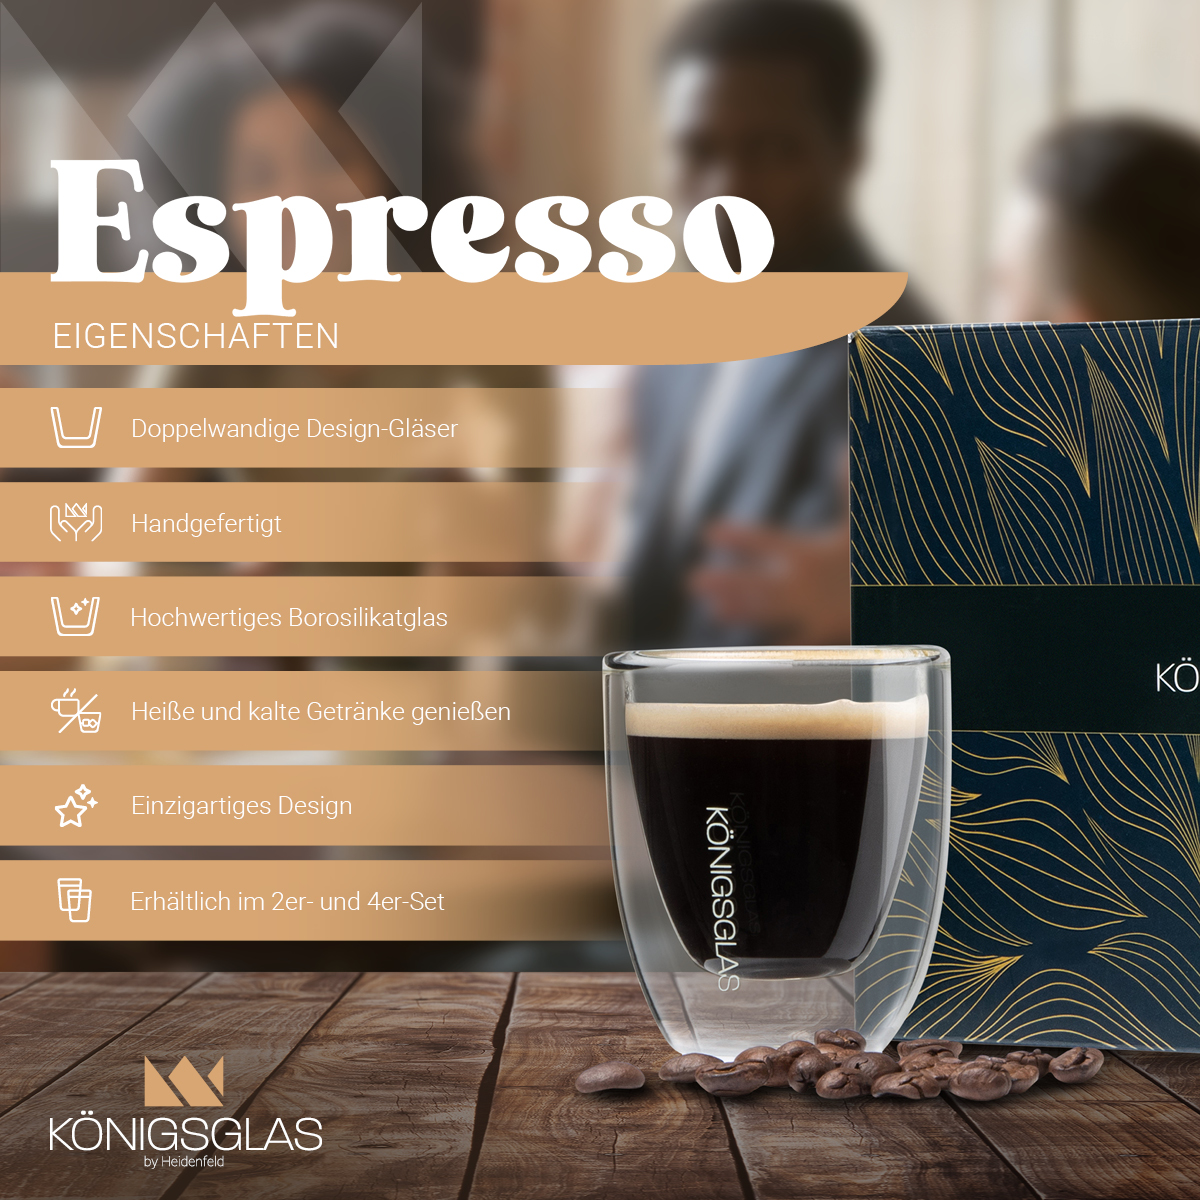 HEIDENFELD Königsglas Kaffeegläser ml 4x 80 Espresso